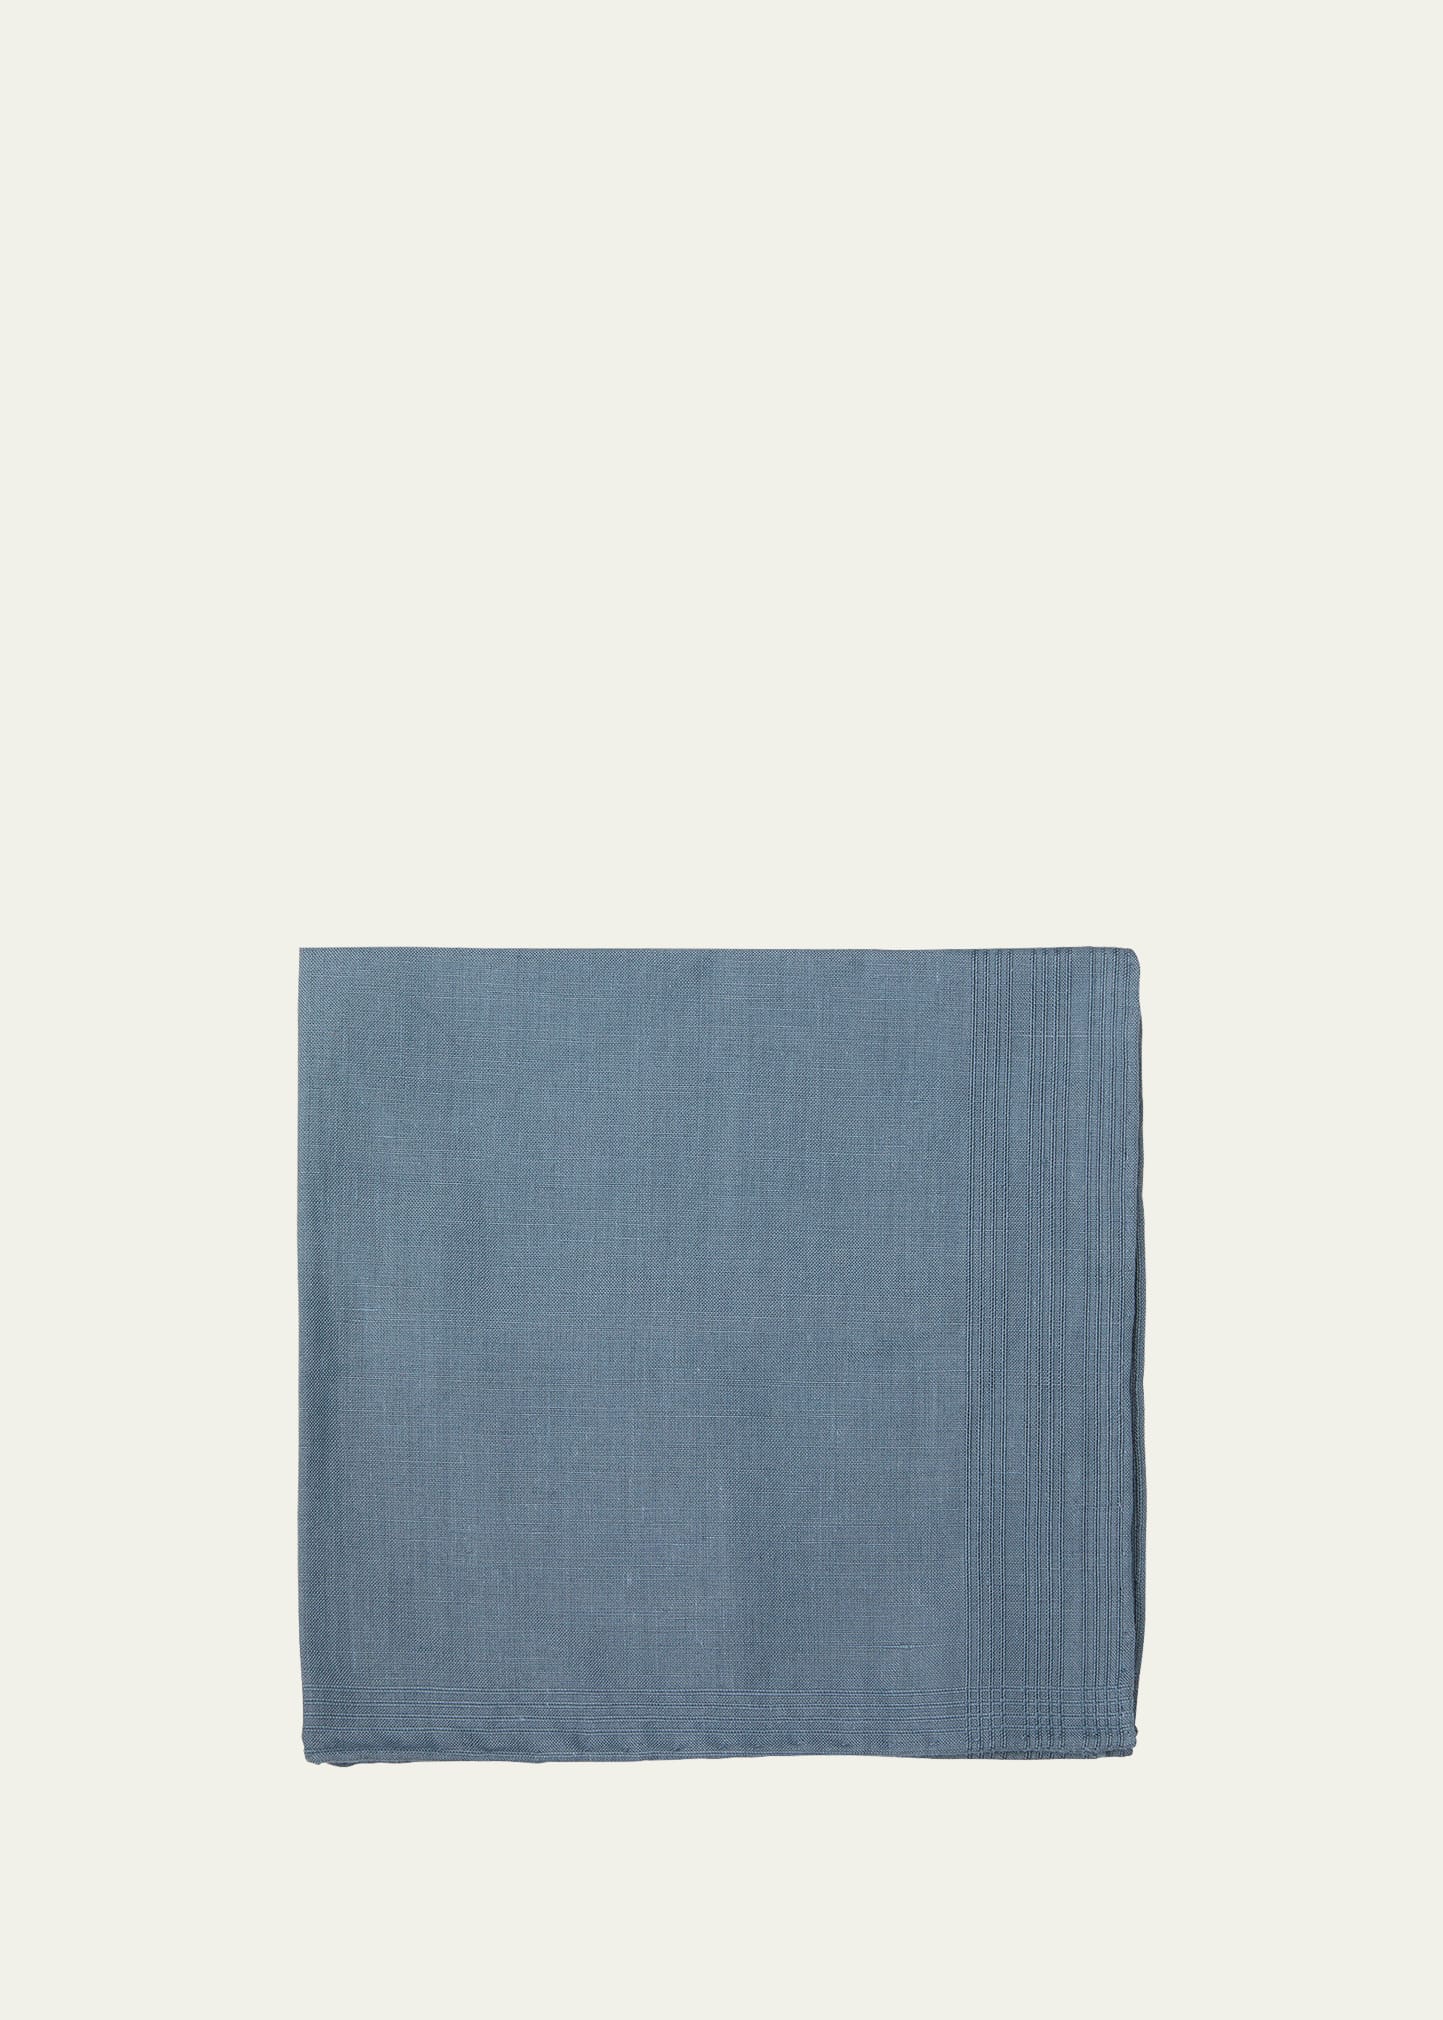 Simonnot Godard Men's Tonal Stripe Handkerchief In Blue